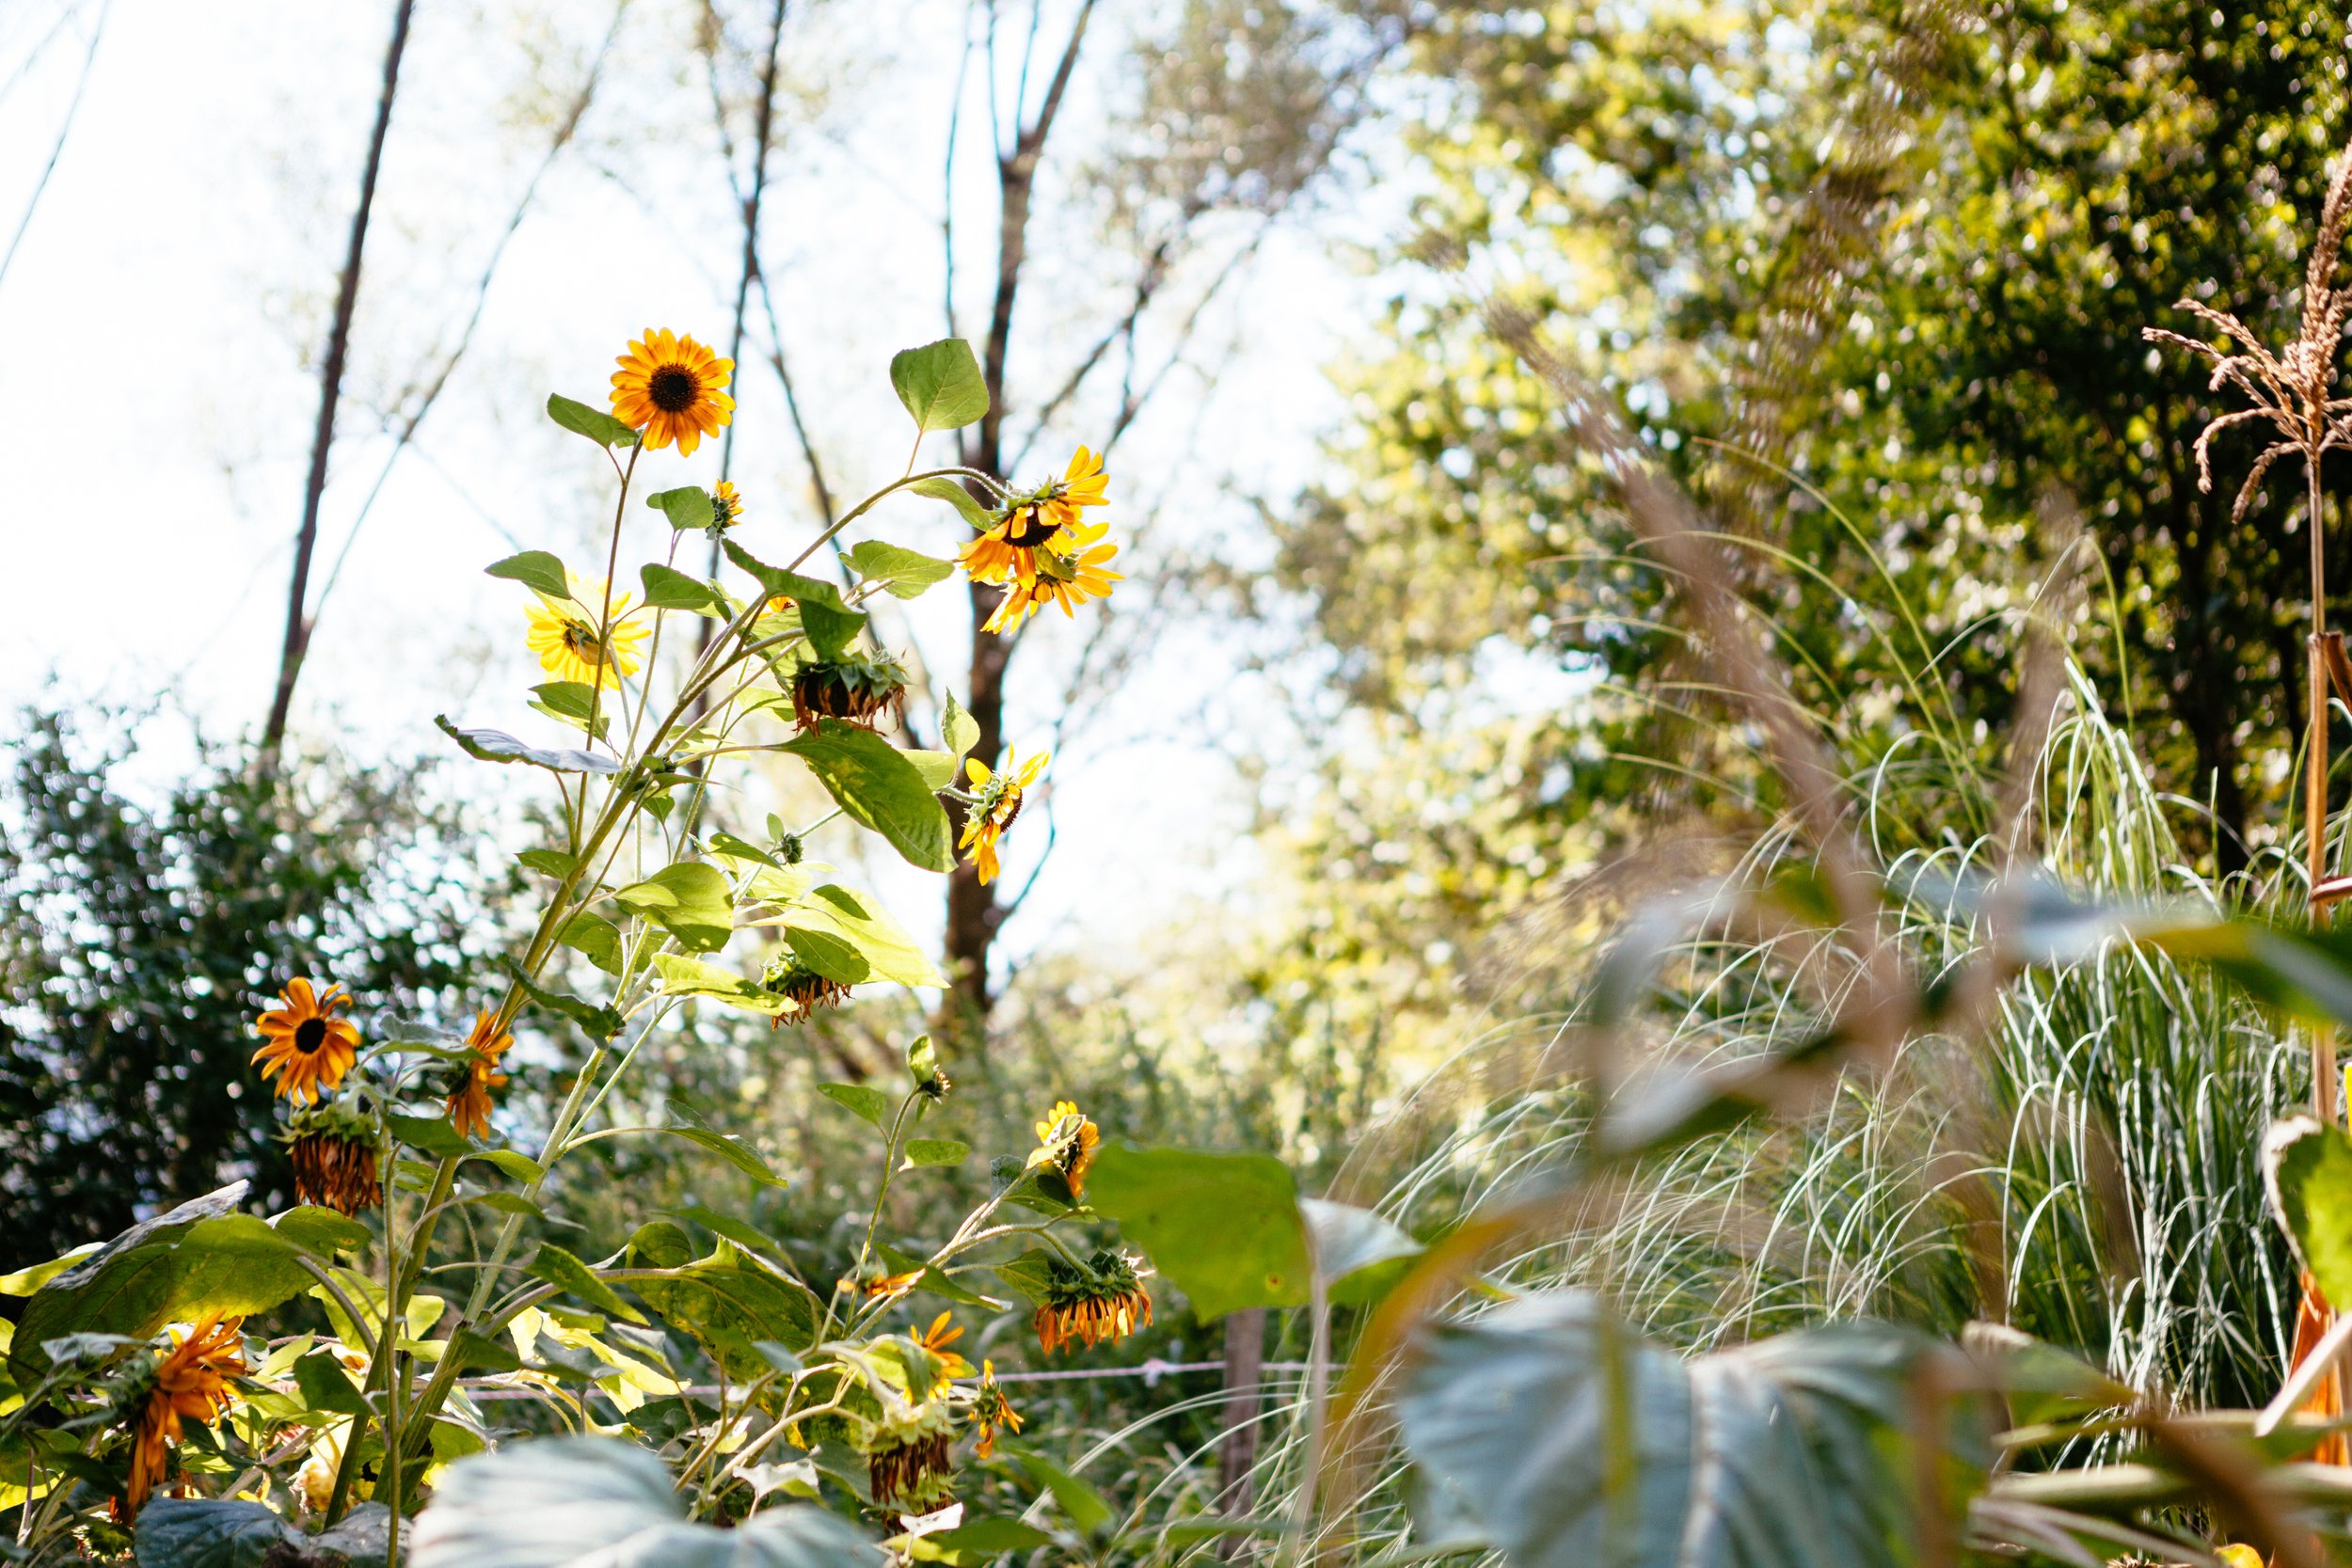  Flower farm tuscany barga italy sustainable no dig sunflowers photographer Elizabeth Armitage 